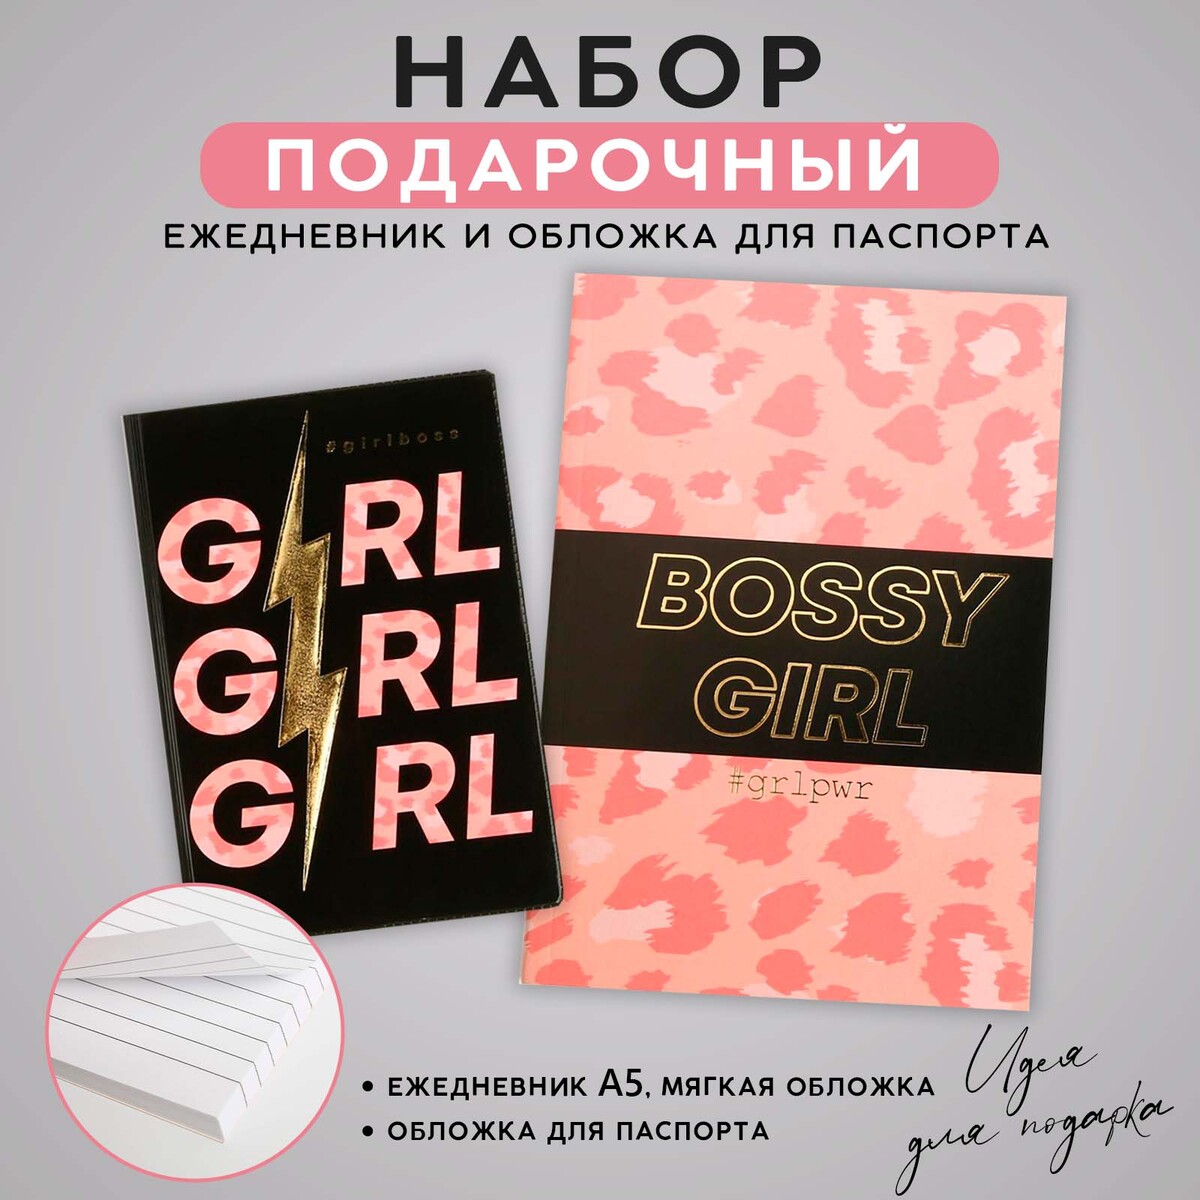 Набор обложка для паспорта и ежедневник #girl odd girl out